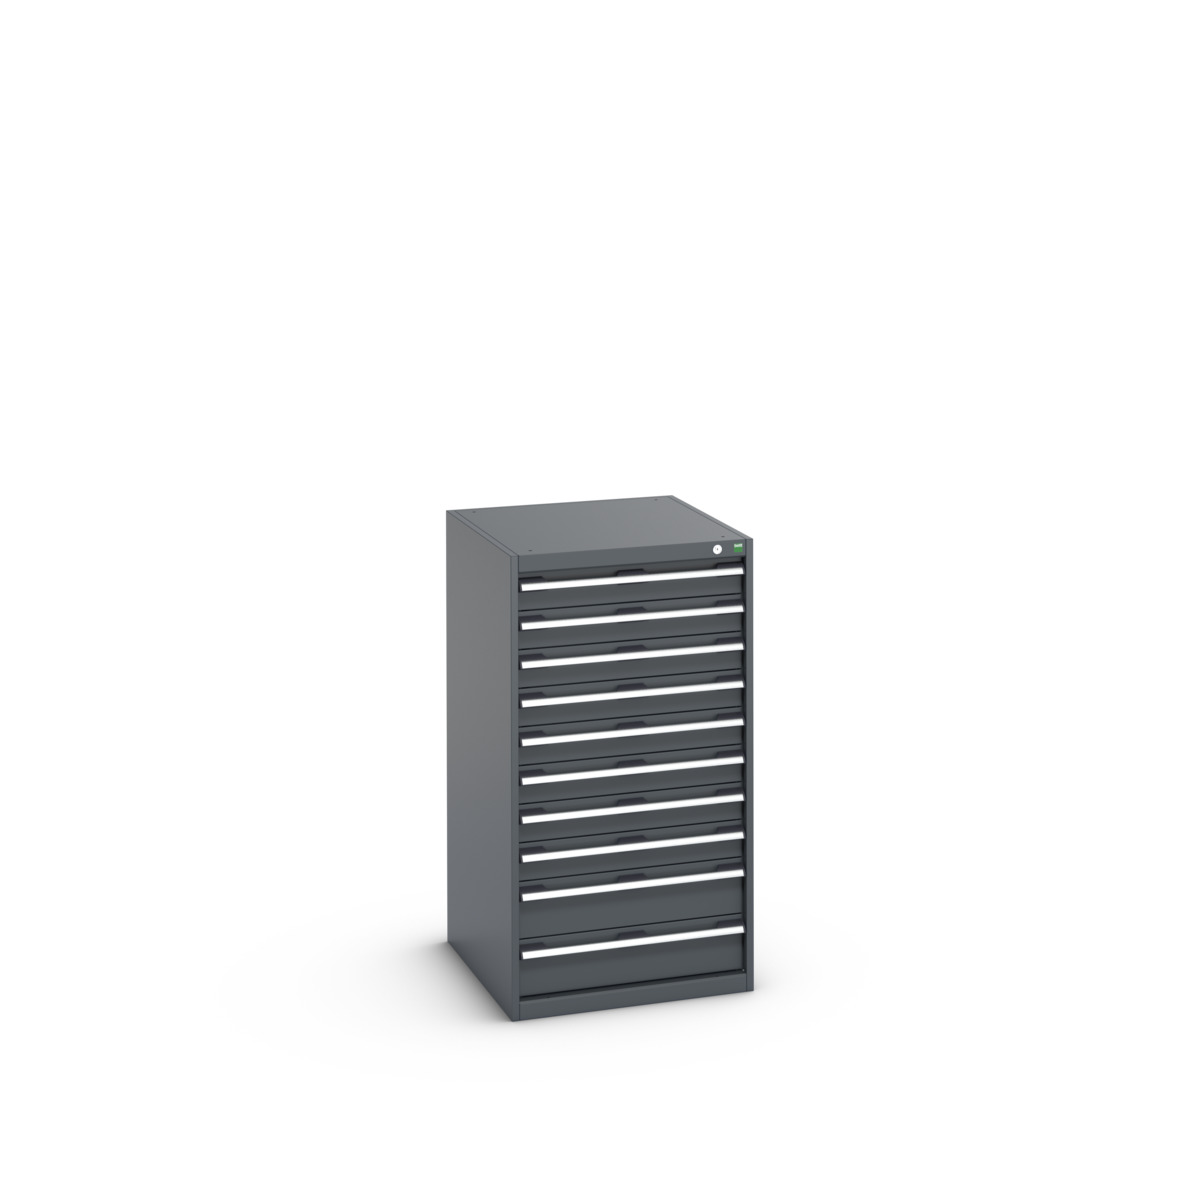 40027043.77V - cubio drawer cabinet